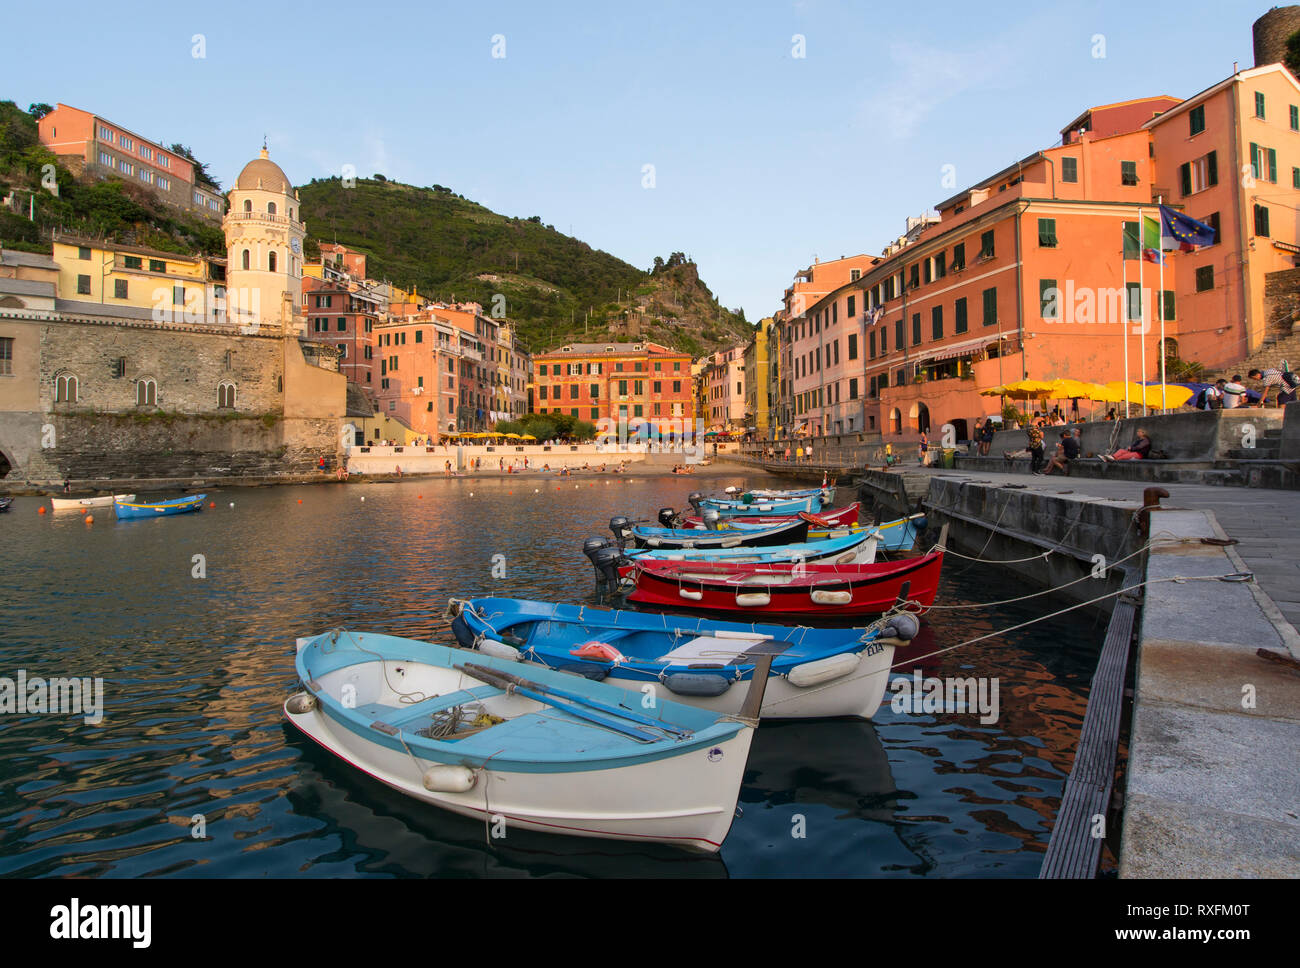 Geschützten Hafen von Vernazza, eine Gemeinde in der Provinz von La Spezia, Ligurien, nordwestlichen Italien. Es ist eines der fünf Städte, die die Region Cinque Terre machen Stockfoto